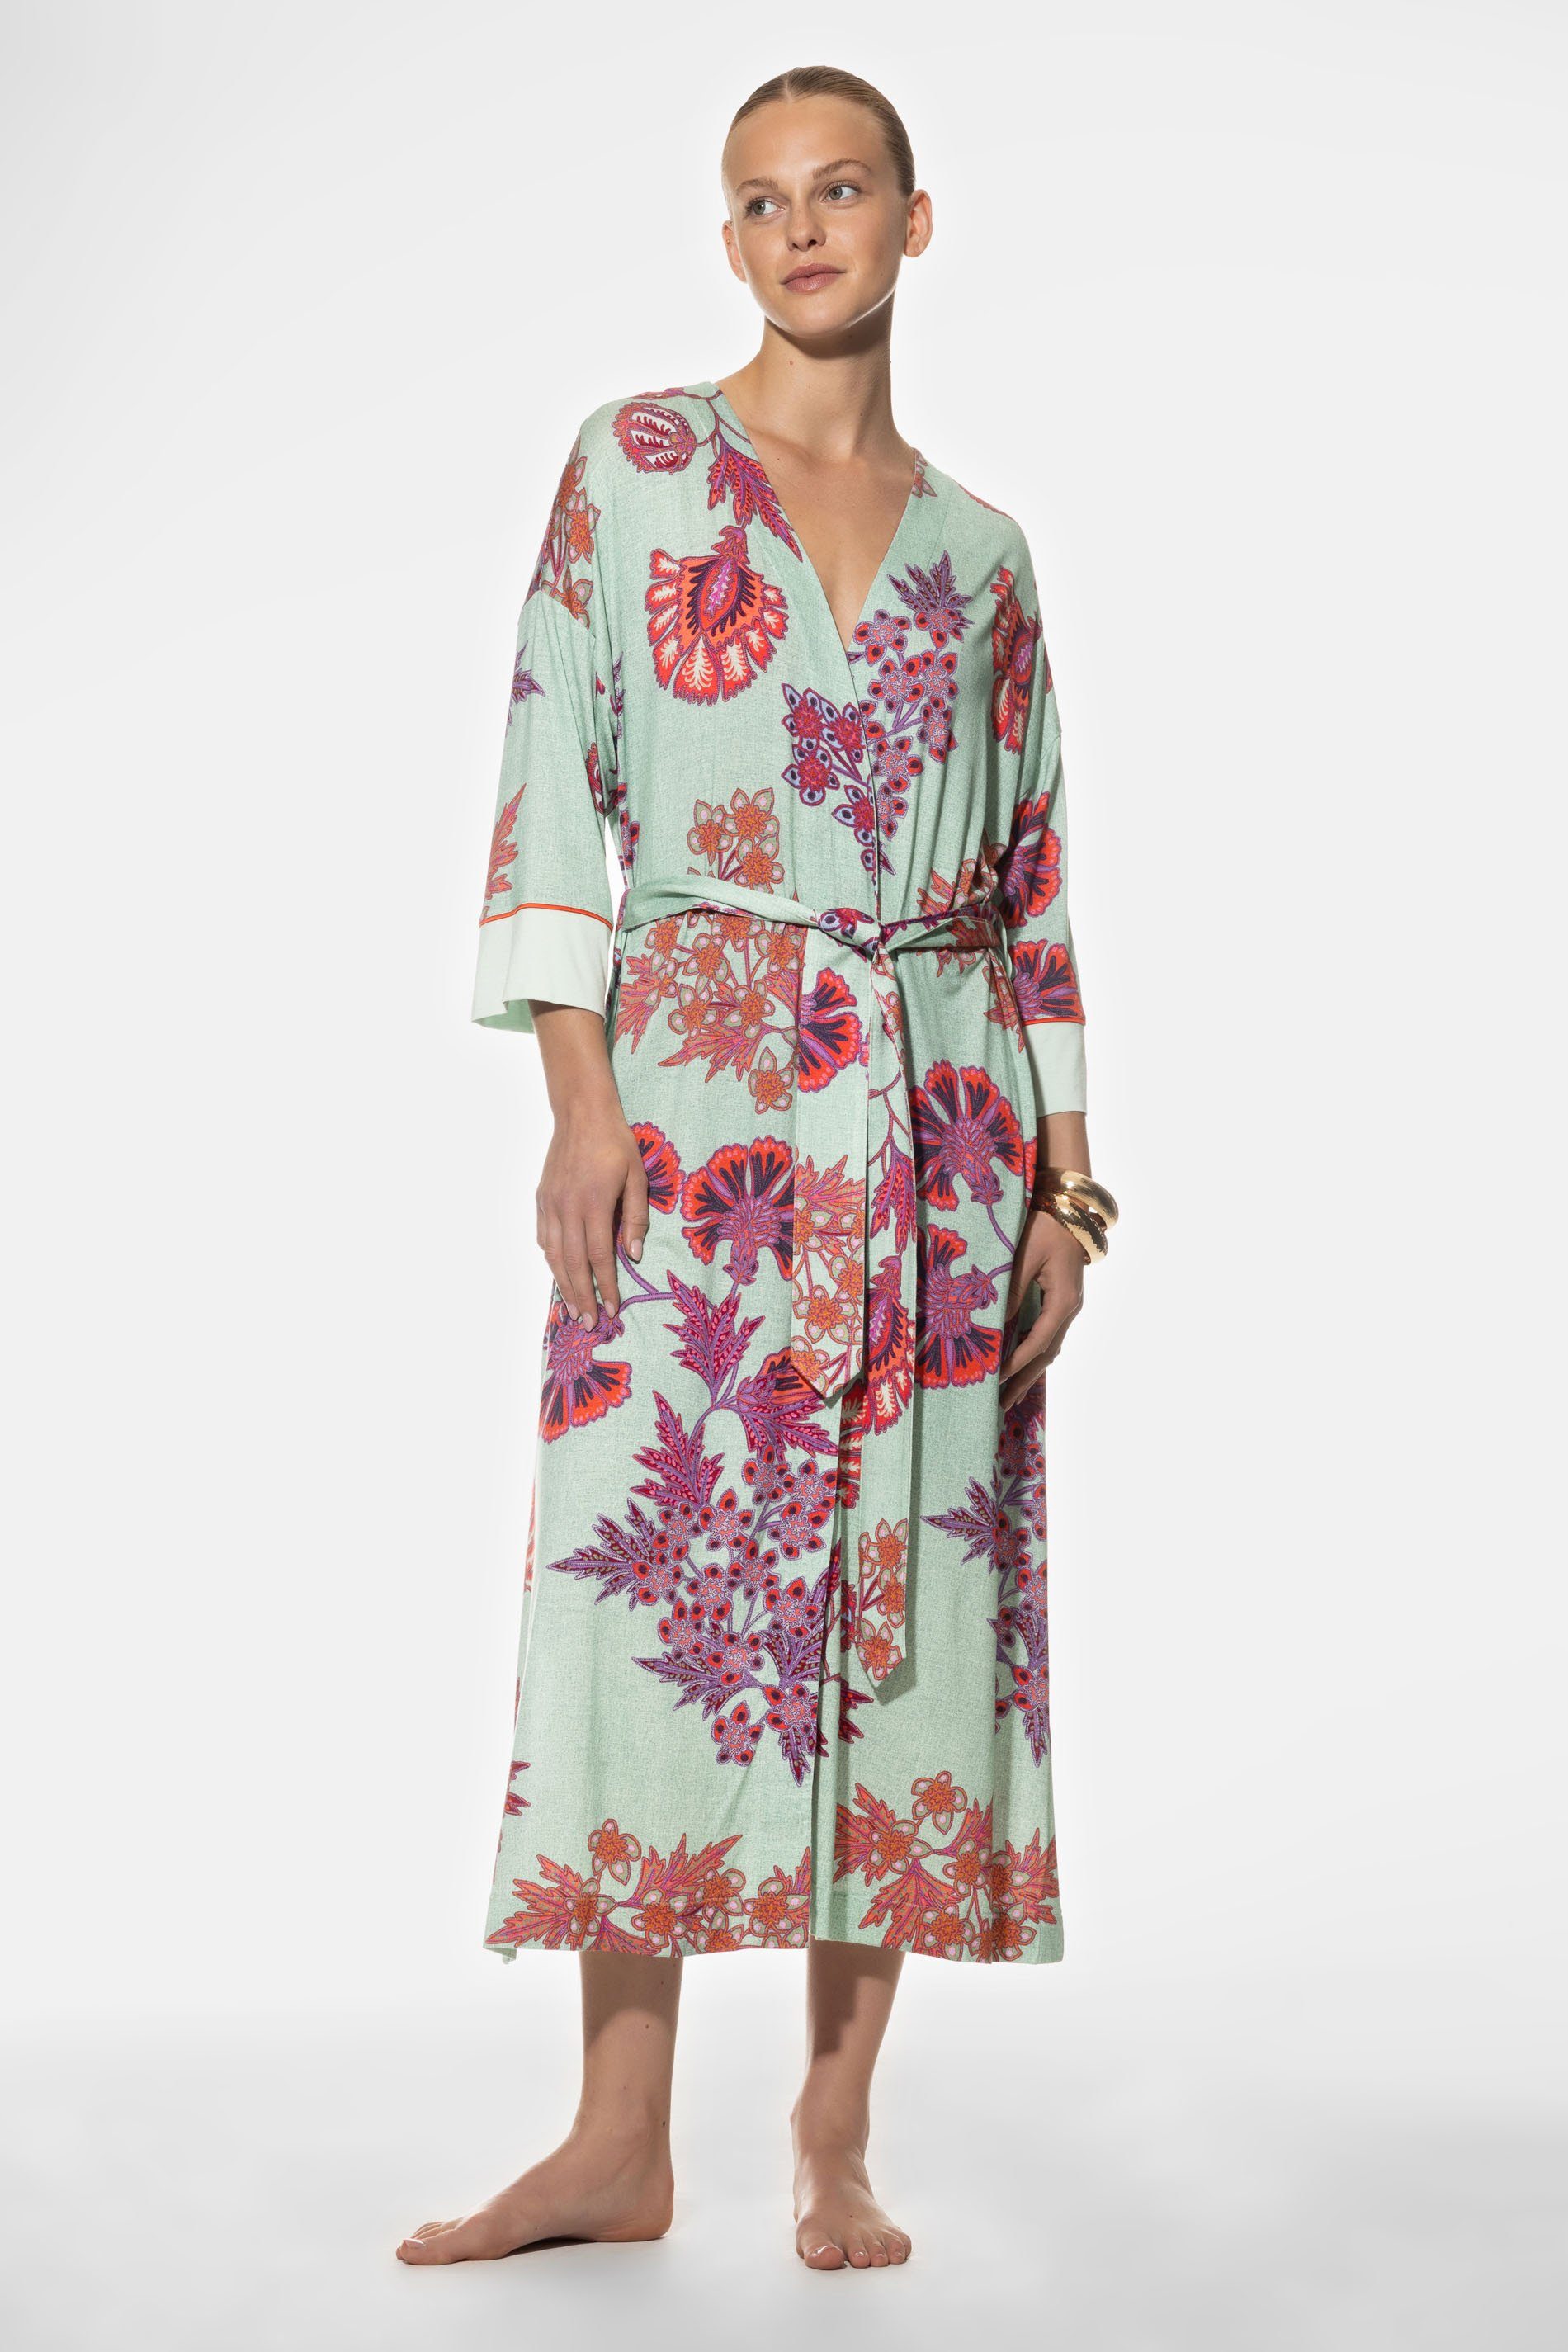 Mey Kimono Serie Haylie Print in sommerlichen Farben, Knöchellang, Довжина in Розмір 38: 125cm, Modal, Gürtel zum Binden